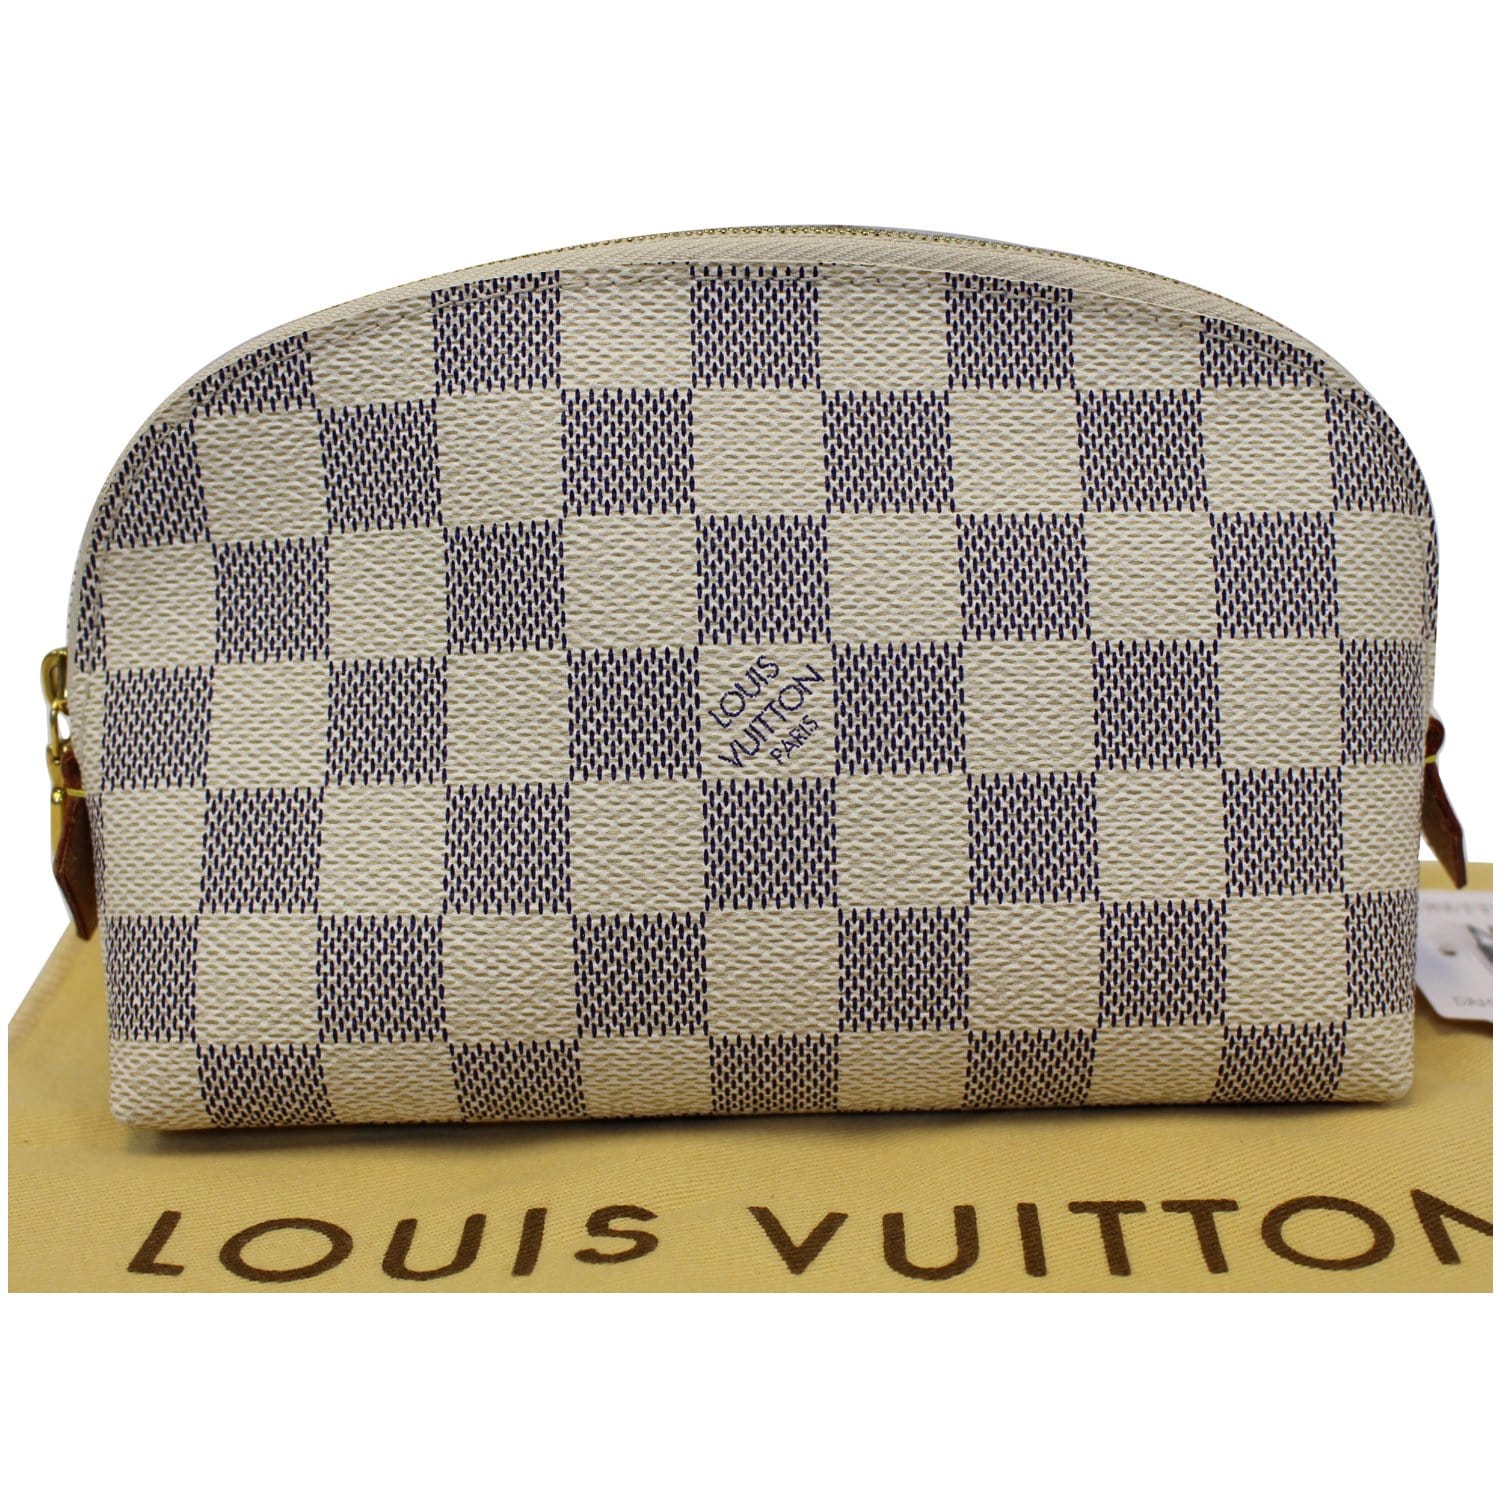 Louis Vuitton Damier Azur Cosmetic Pouch